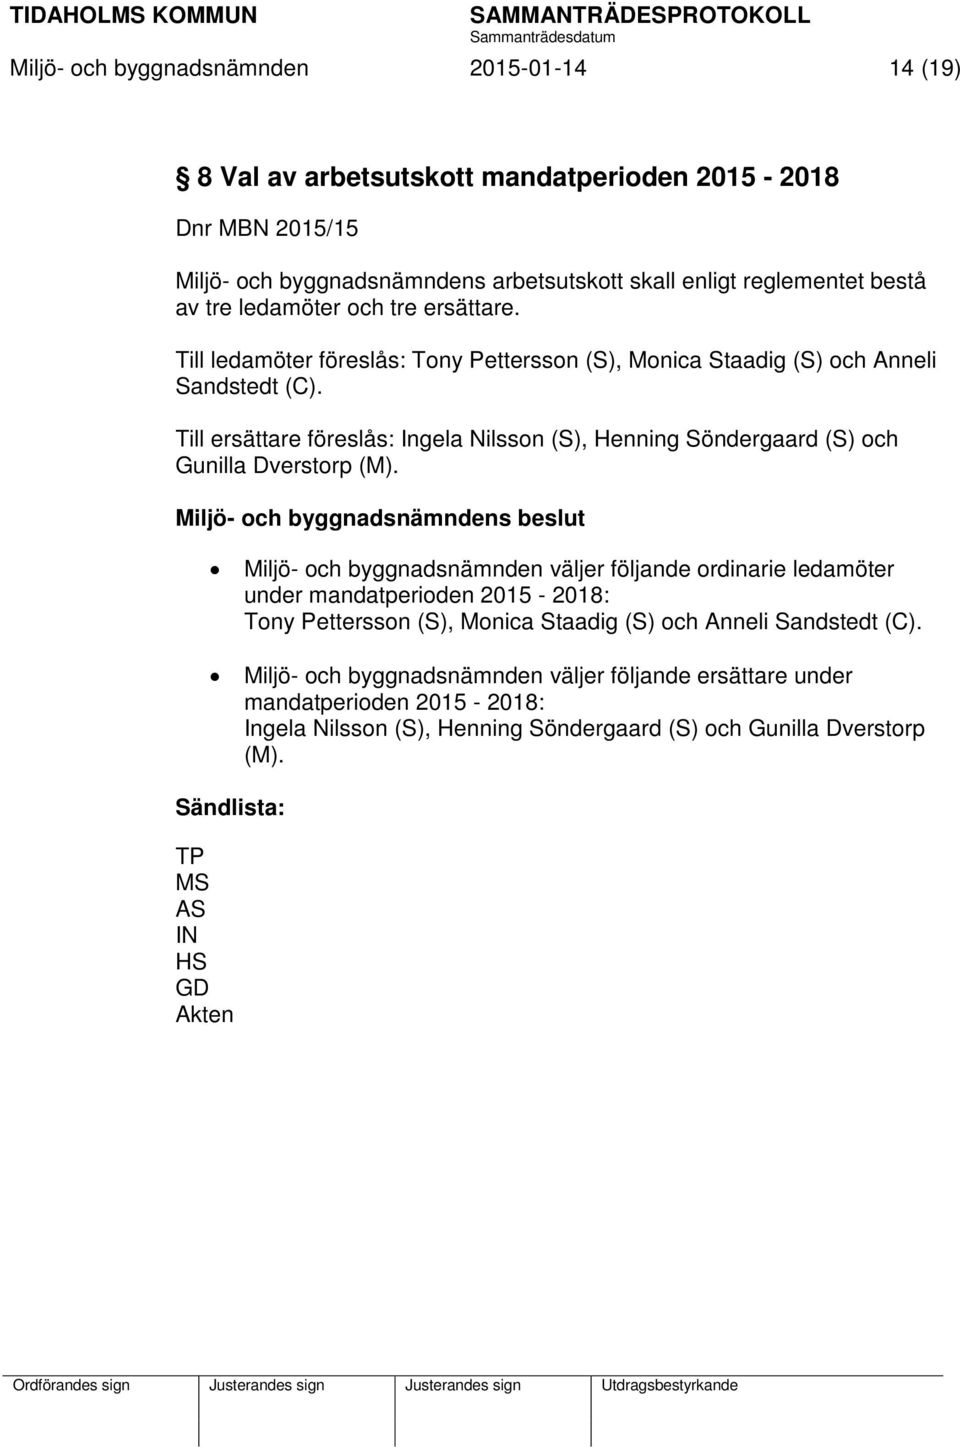 Till ersättare föreslås: Ingela Nilsson (S), Henning Söndergaard (S) och Gunilla Dverstorp (M).